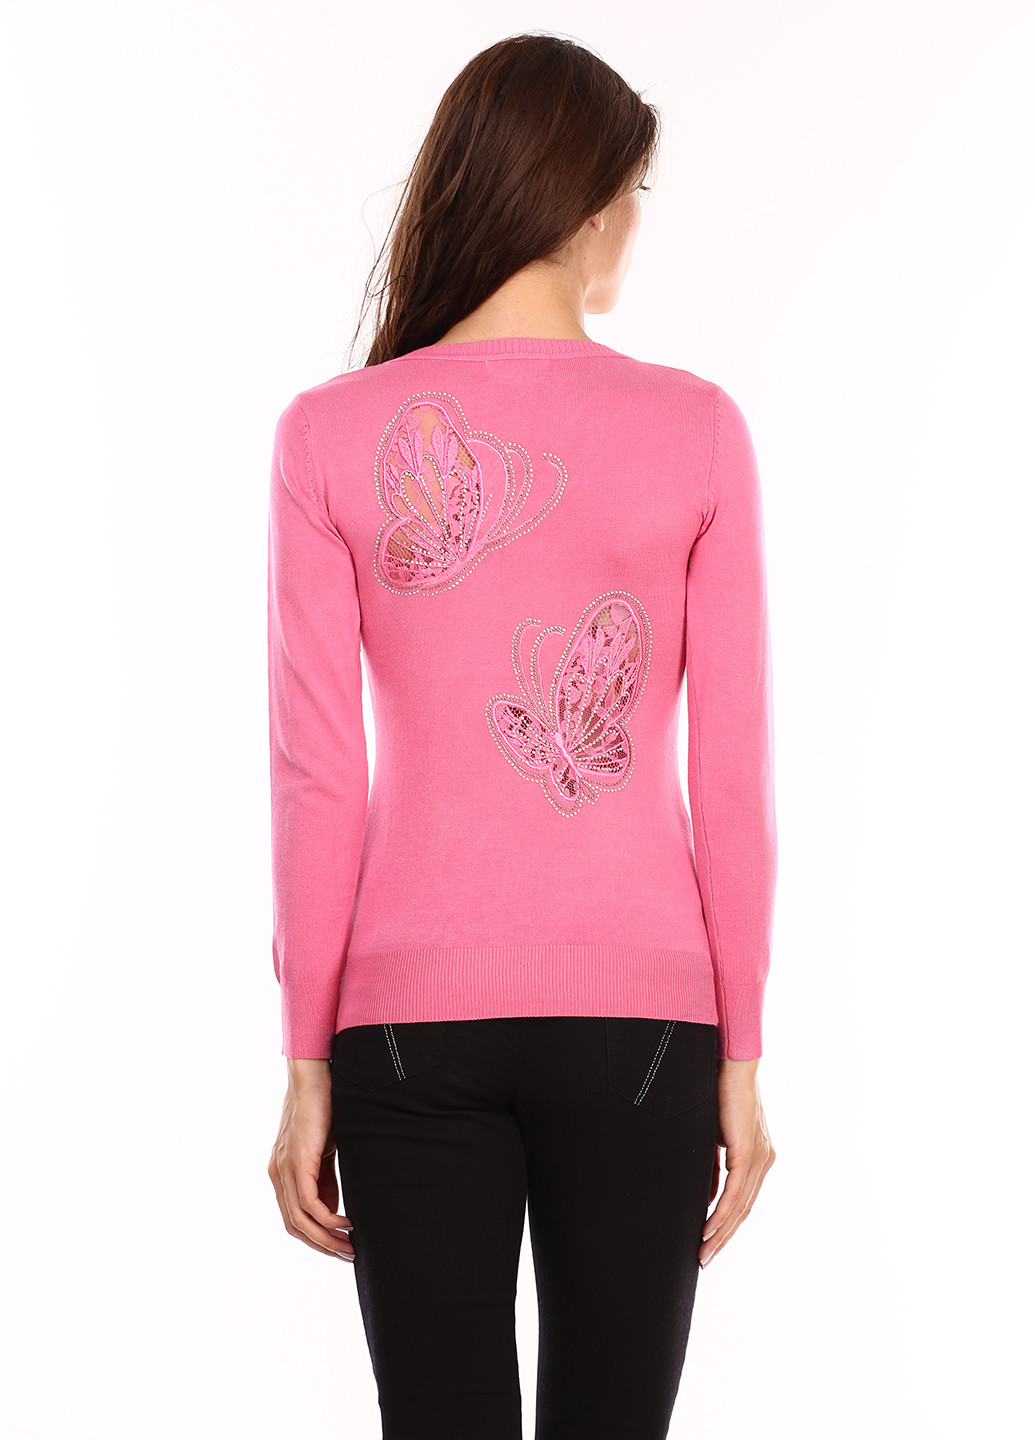 Розовый демисезонный пуловер пуловер Elegance